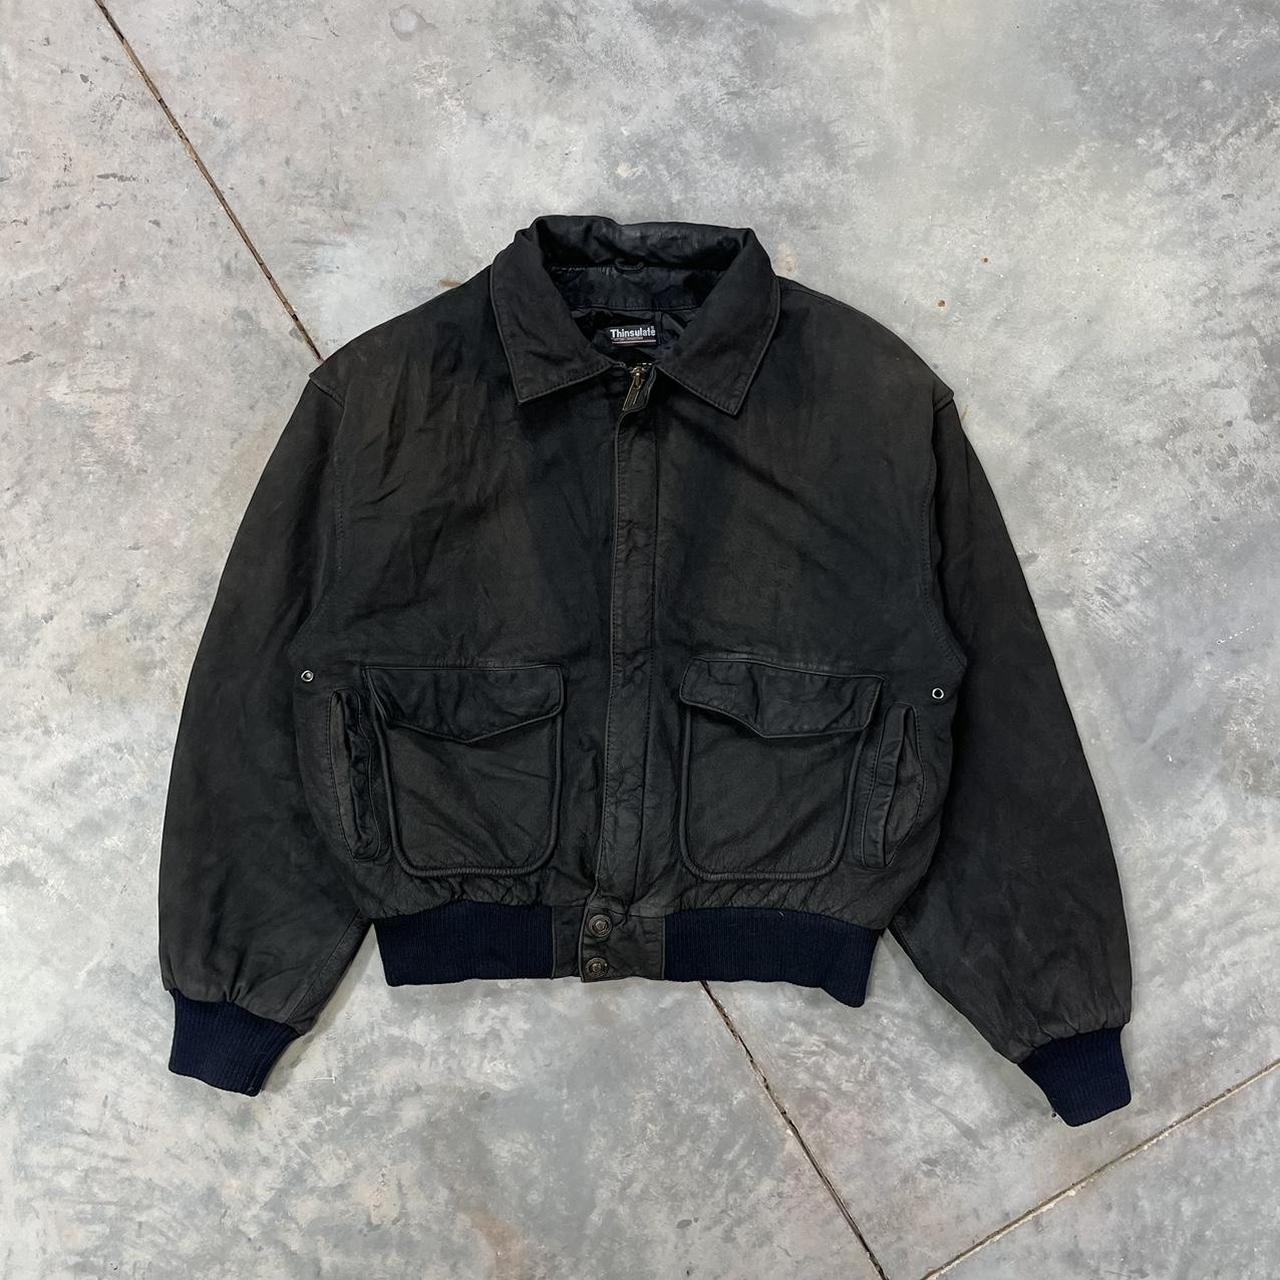 Vintage Leather Bomber Jacket Black Vintage Suede... - Depop